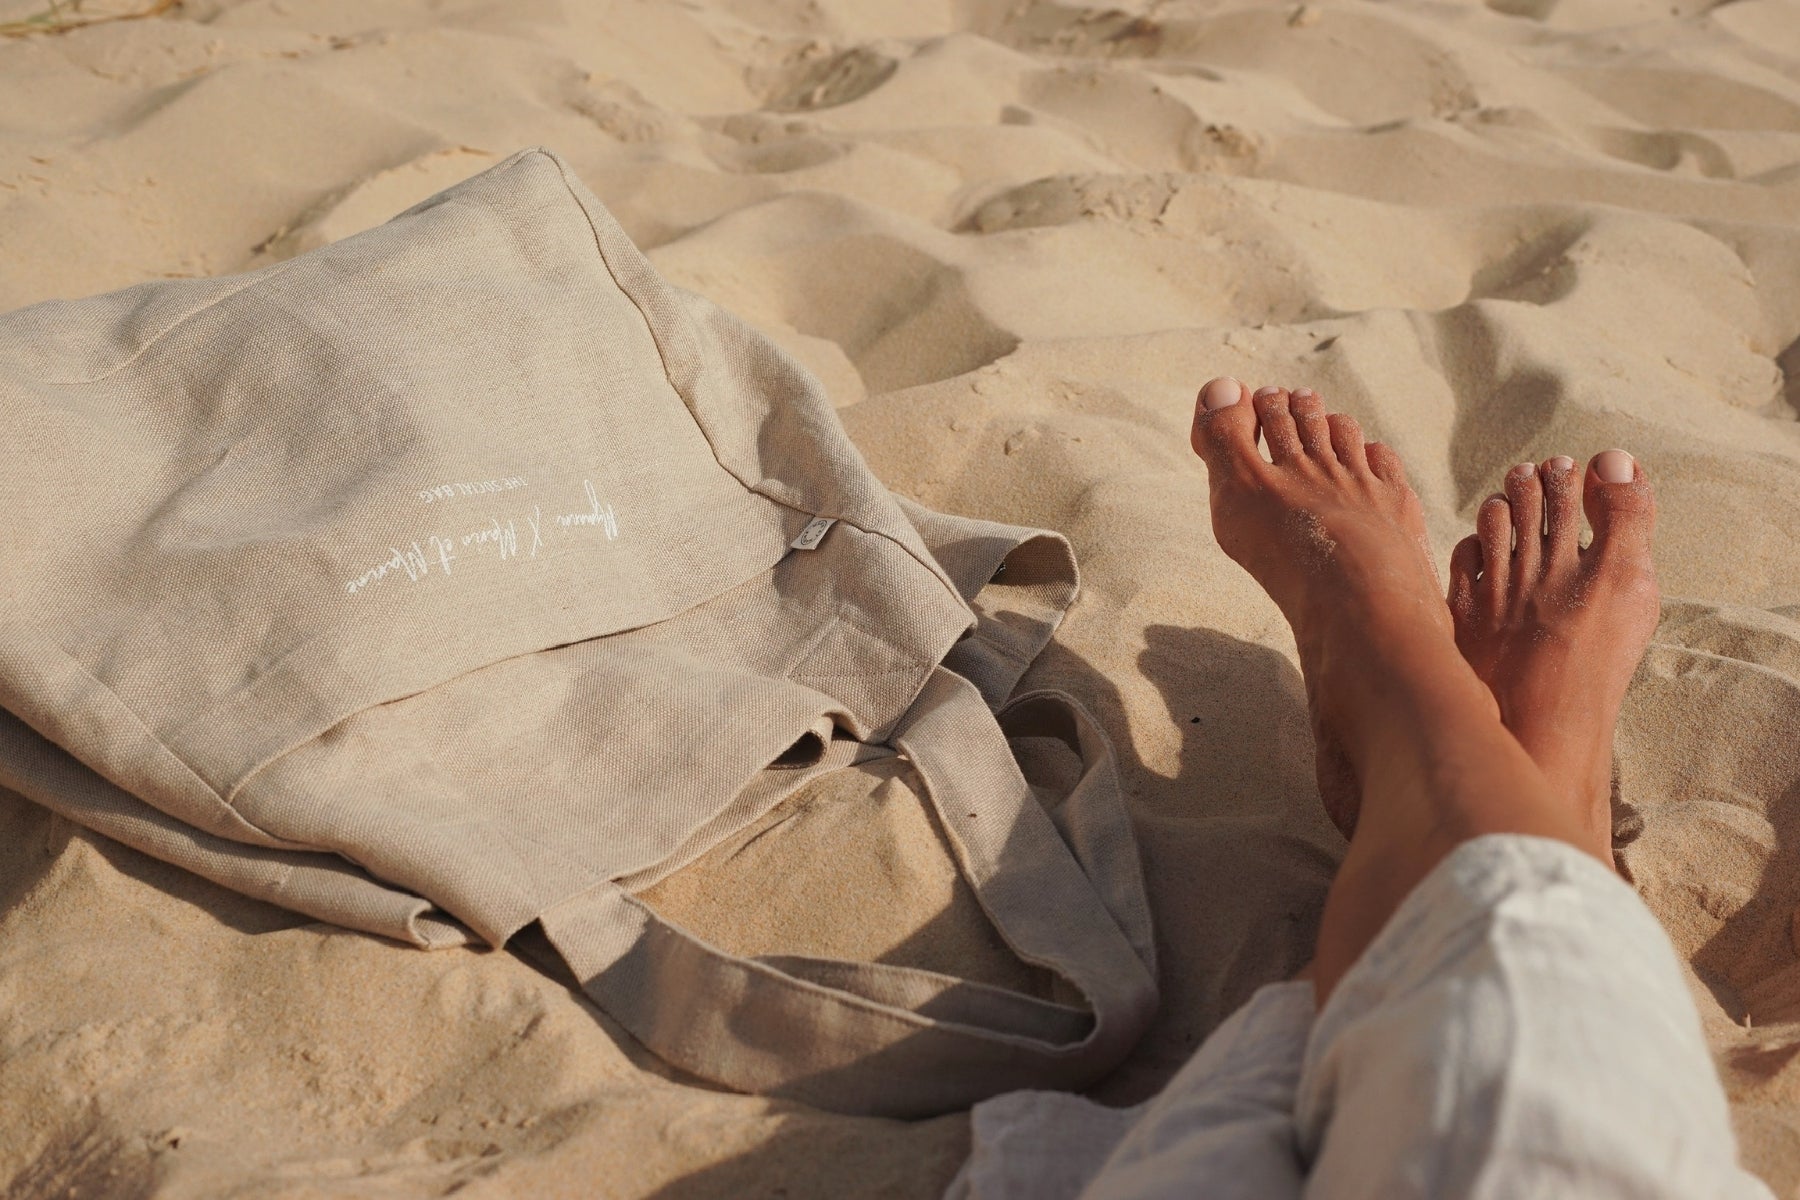 The Social Bag on the beach